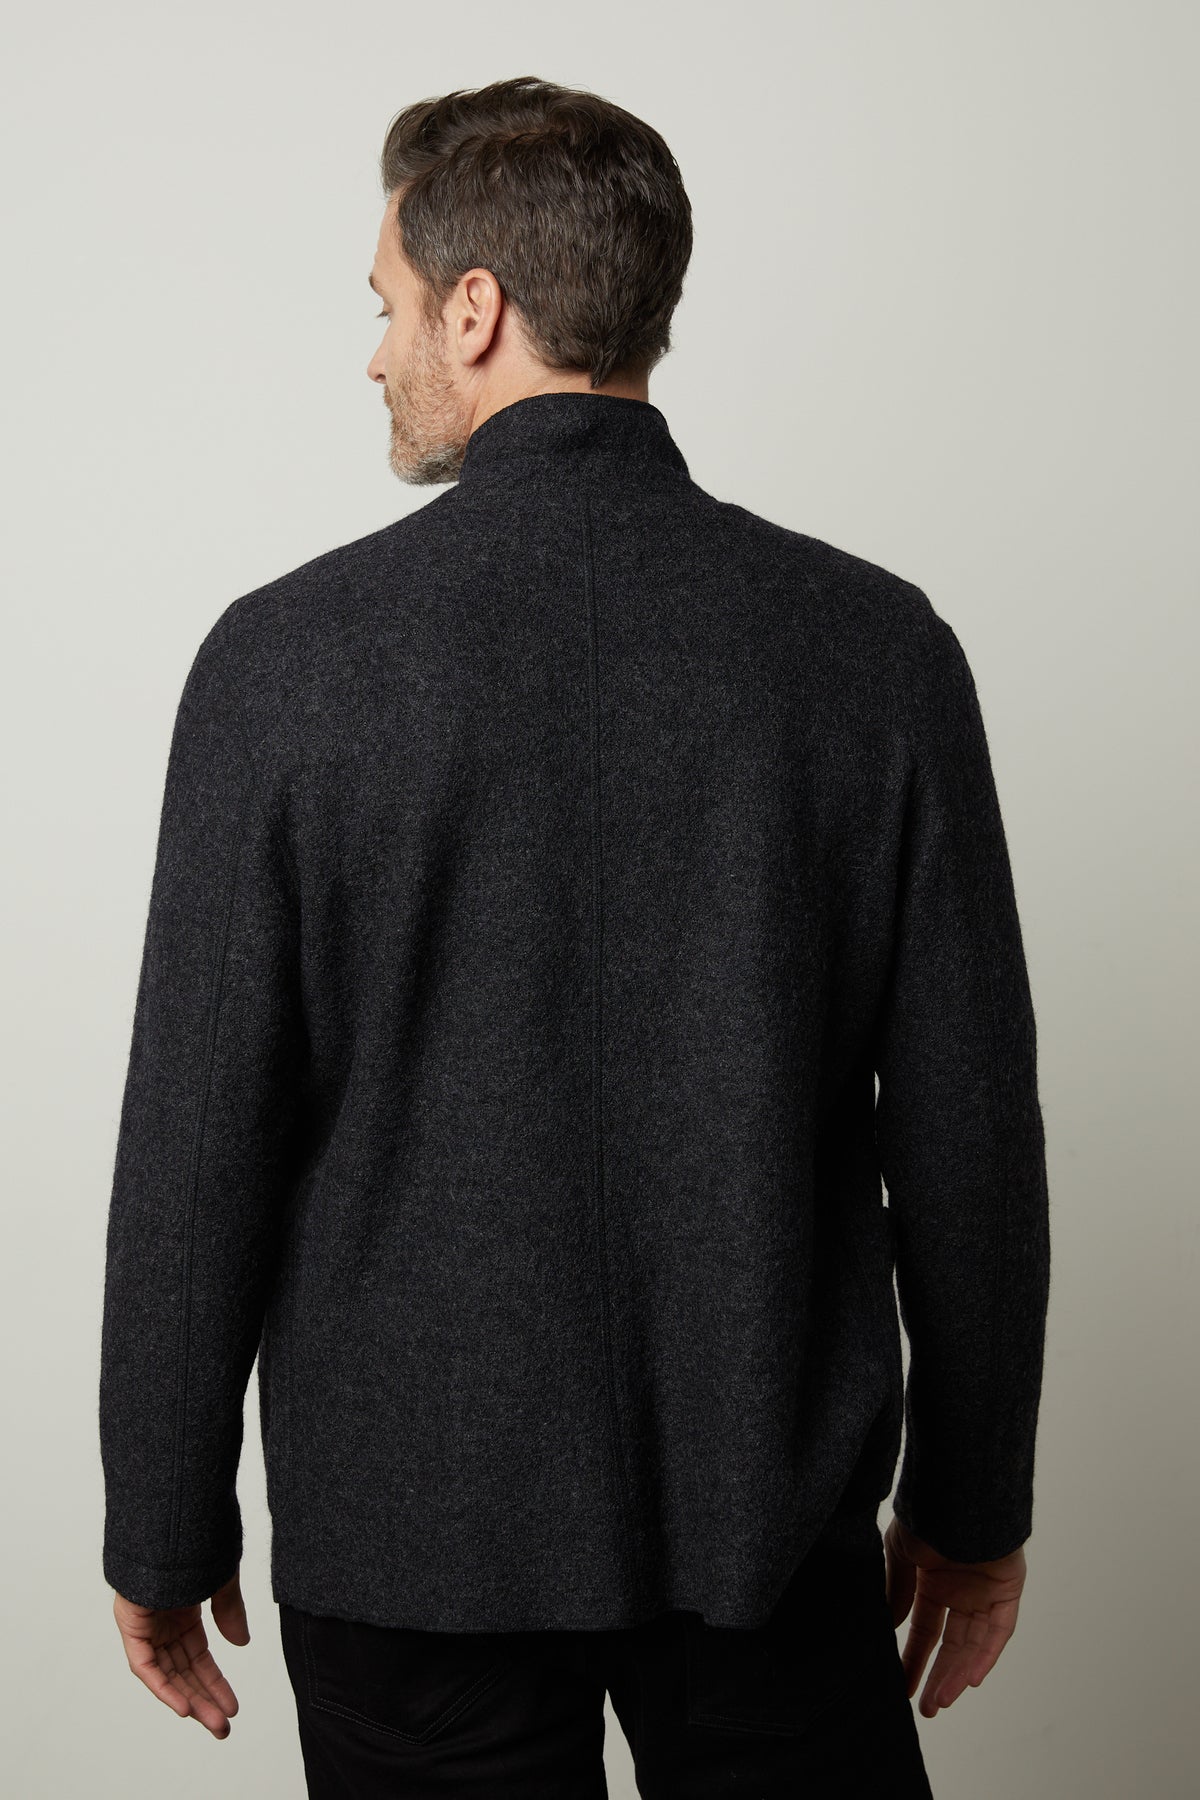 SAINT LAURENT Slim-Fit Satin-Trimmed Wool Blazer for Men | MR PORTER